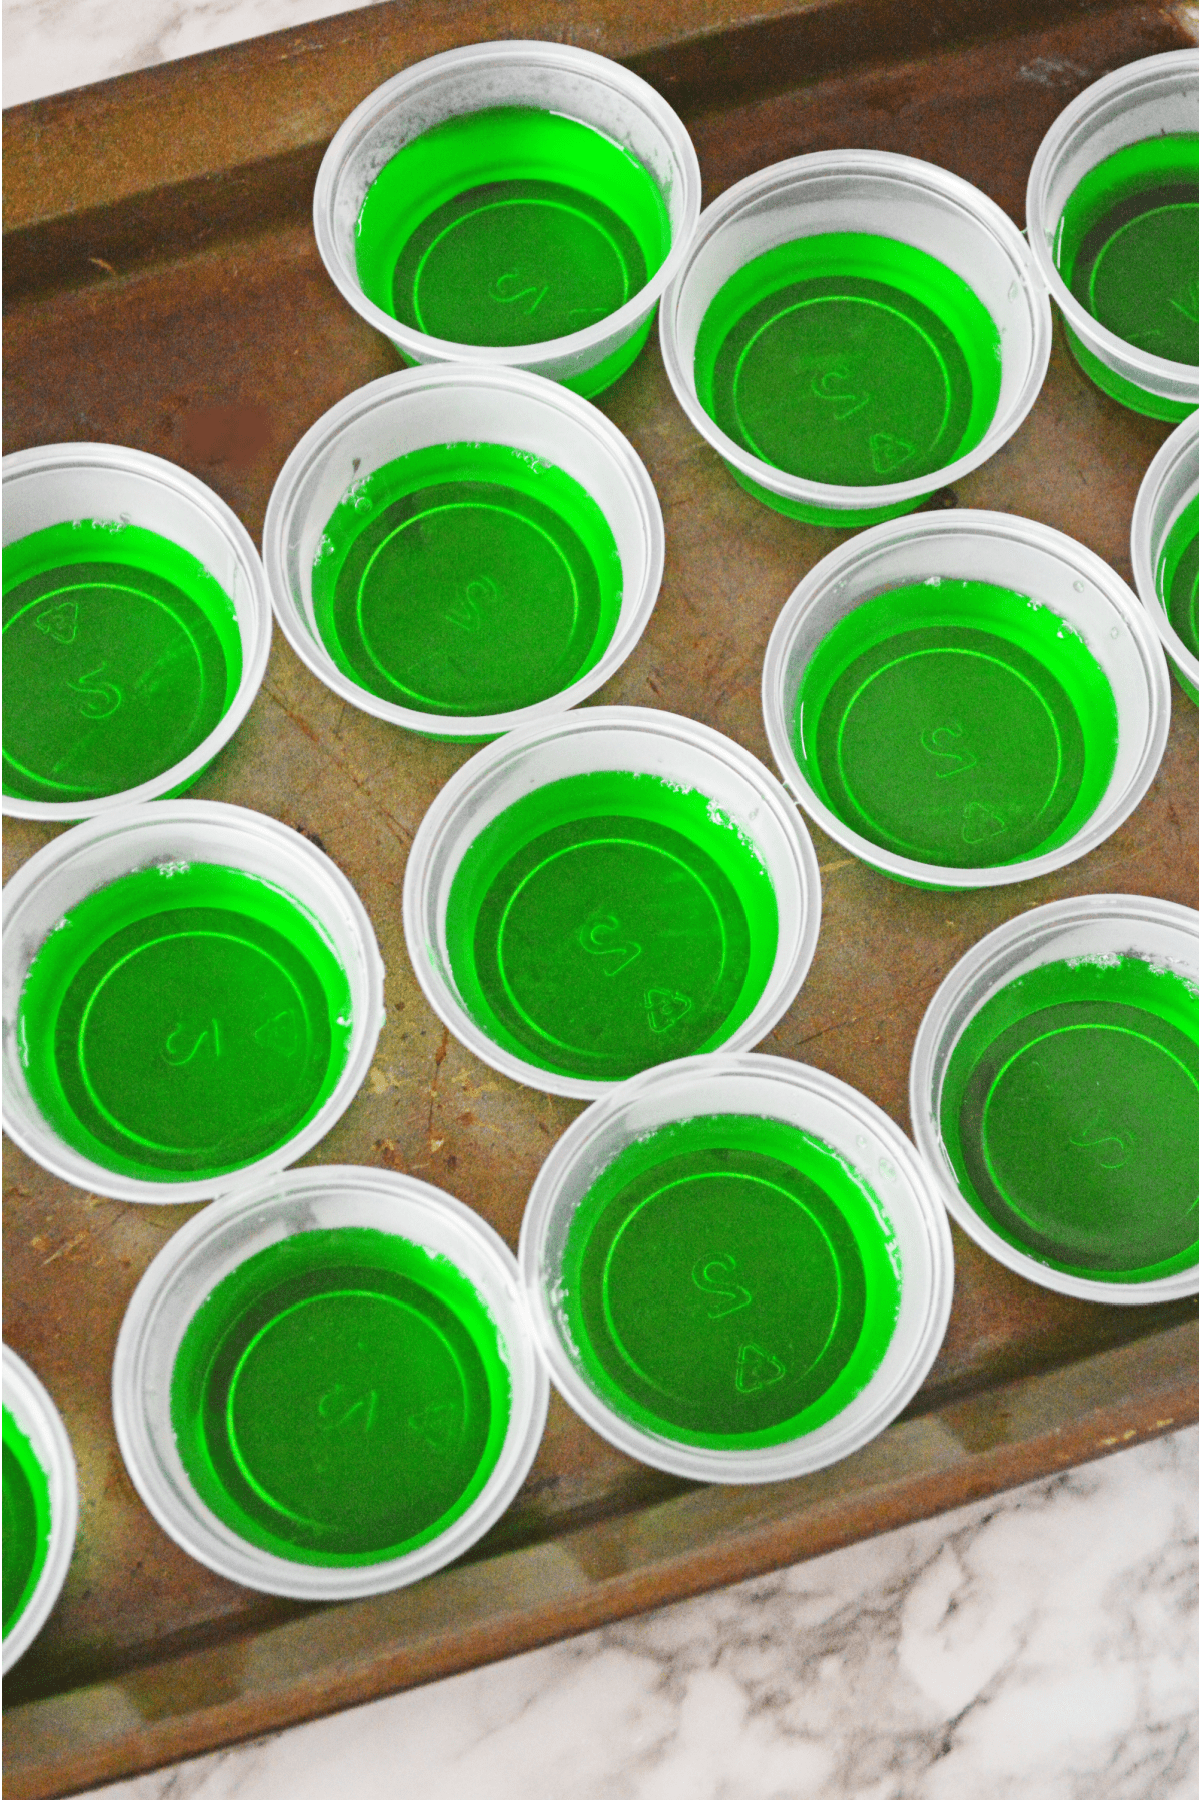 Green jello in plastic shot cups